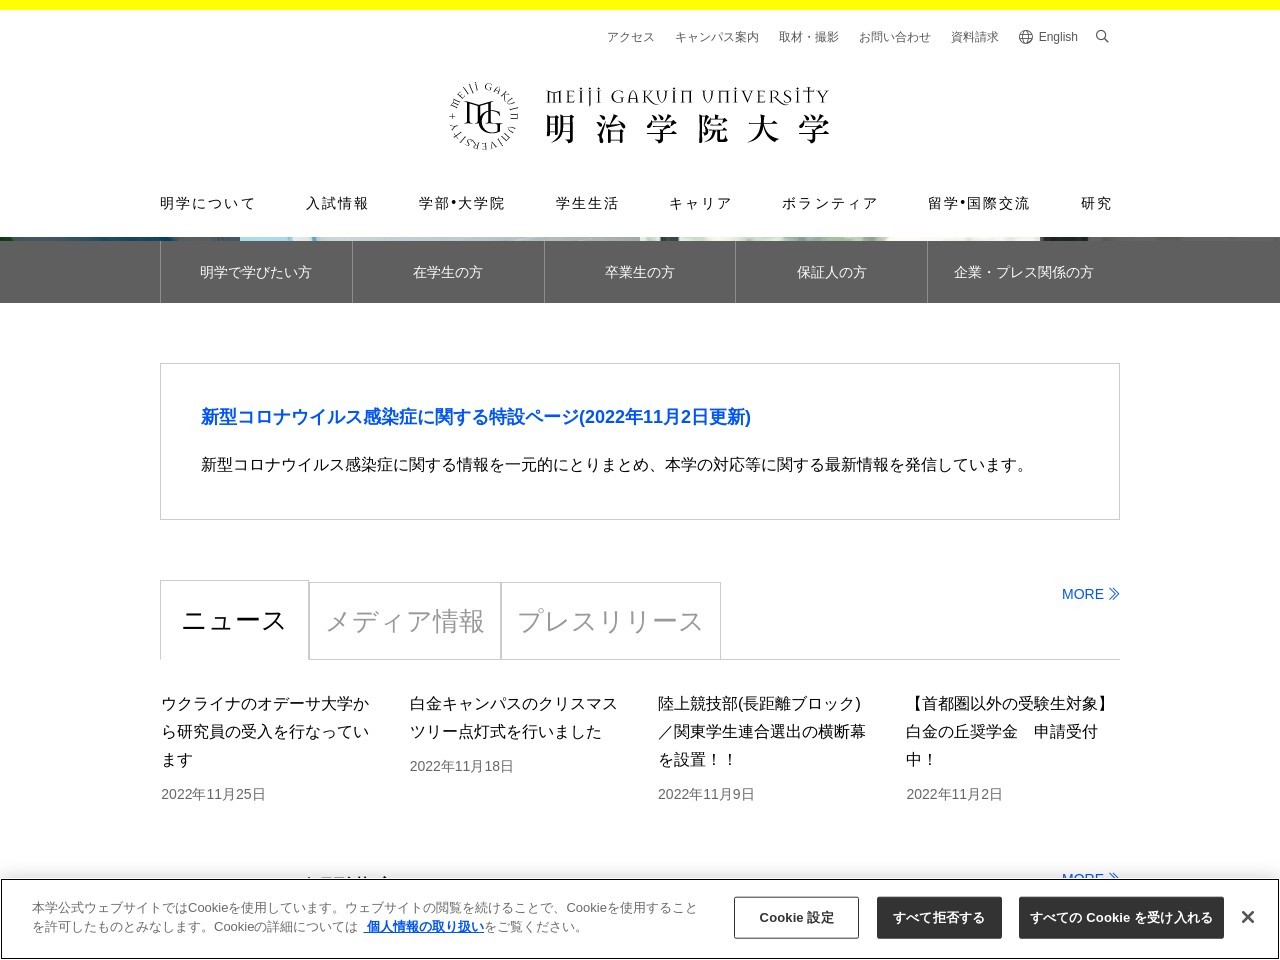 明治学院大学横浜校舎 図書館のクチコミ・評判とホームページ